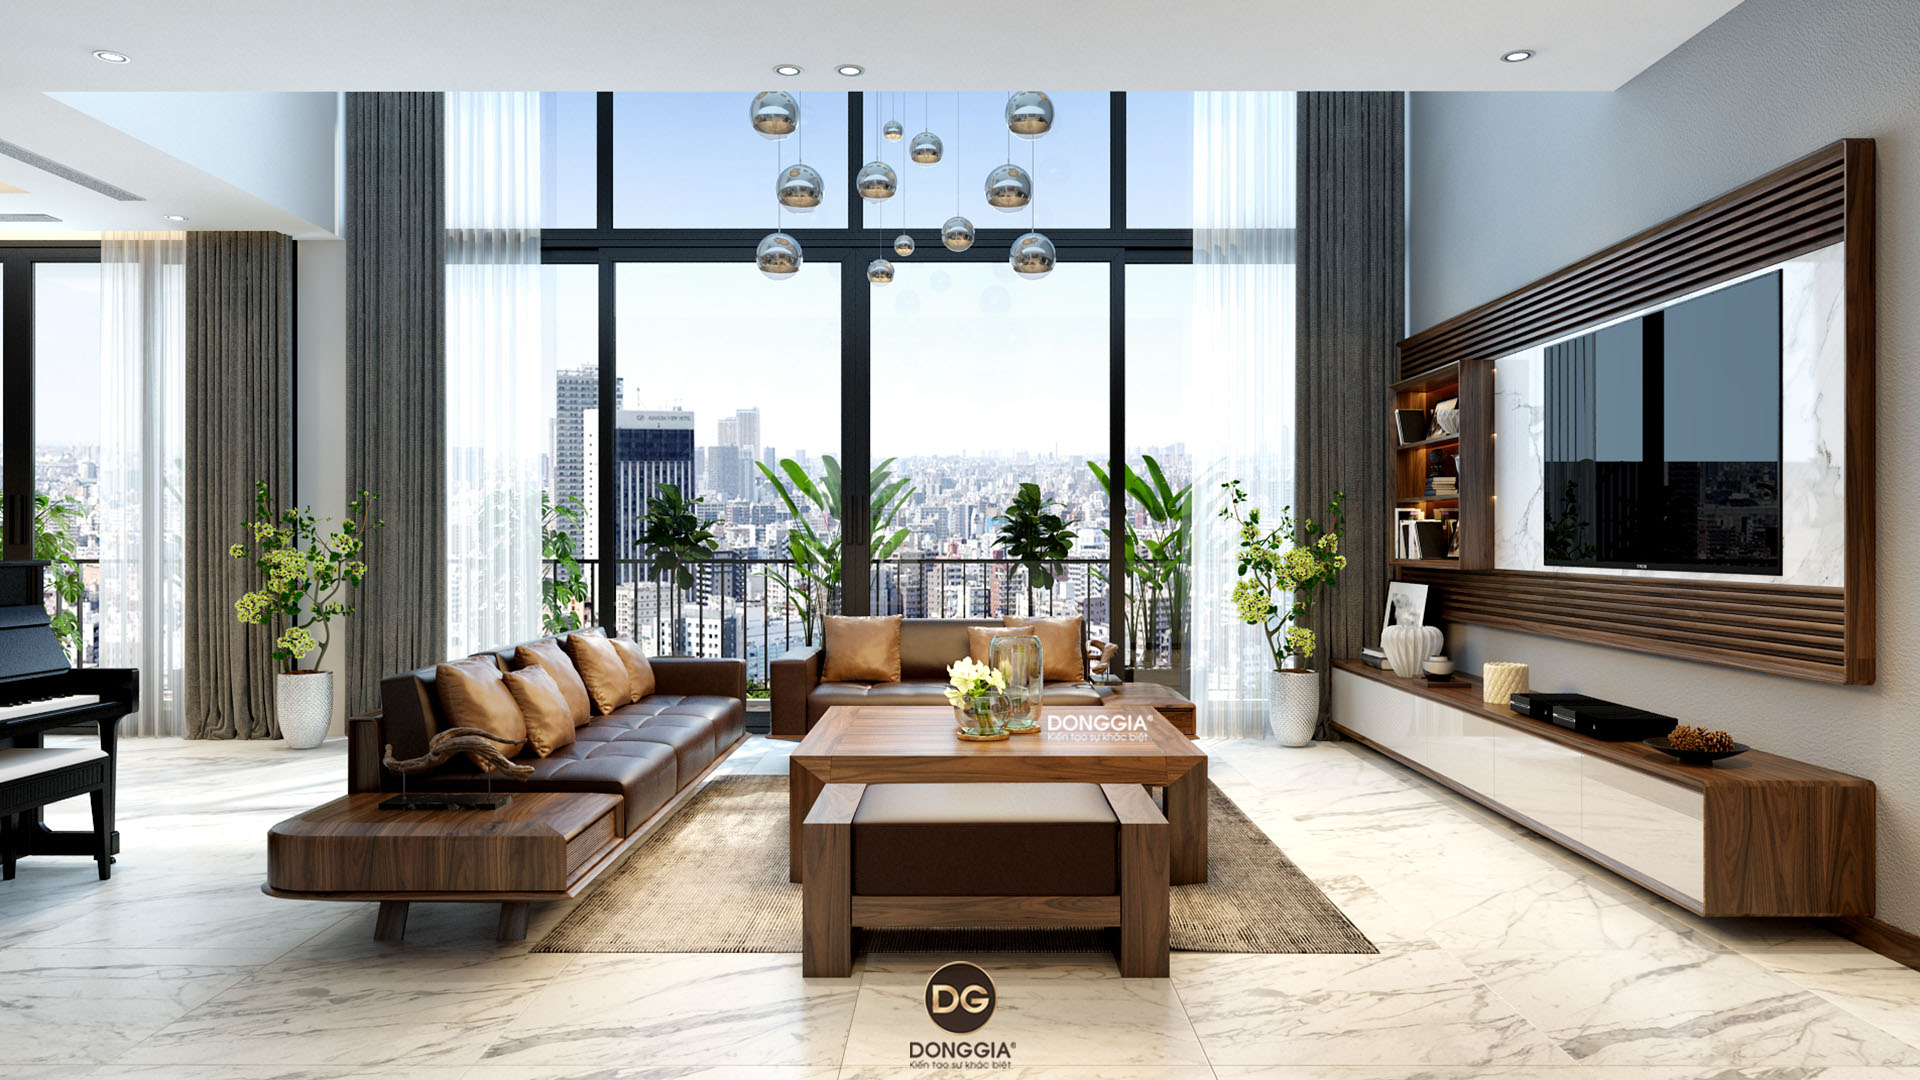 39 Mẫu thiết kế nội thất phòng khách chung cư đẹp, hiện đại | An Lộc